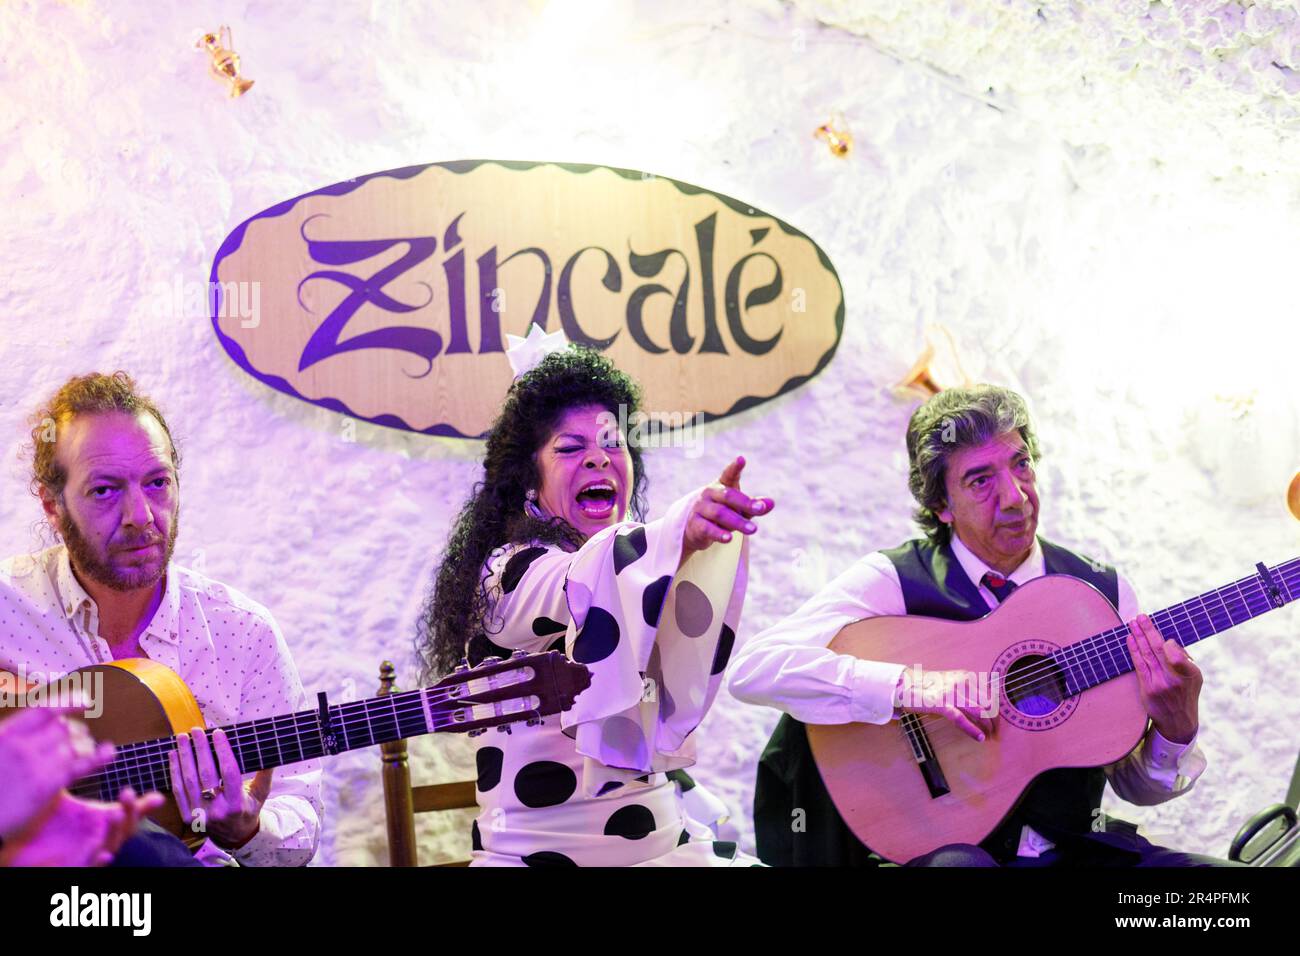 Espagne, Andalousie, Grenade, chanteur de Flamenco et guitaristes jouant dans une grotte du quartier de Sacromonte. Banque D'Images